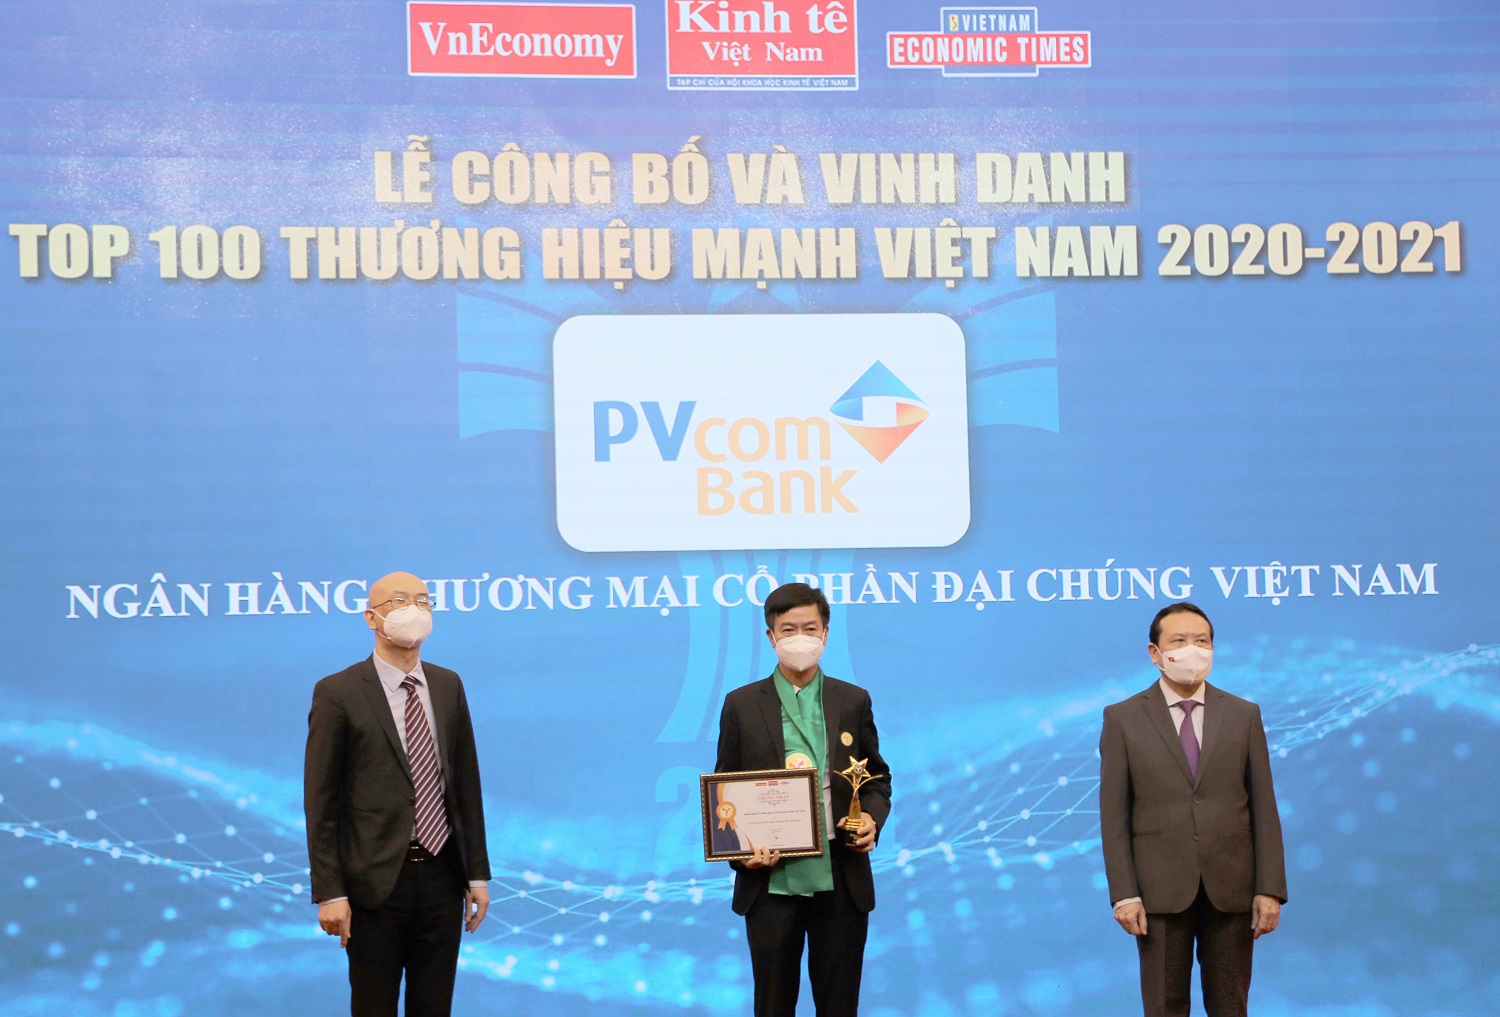 Đại diện Ngân hàng TMCP Đại Chúng Việt Nam (PVcomBank) nhận bằng khen và cup vinh danh Thương hiệu mạnh Việt Nam.